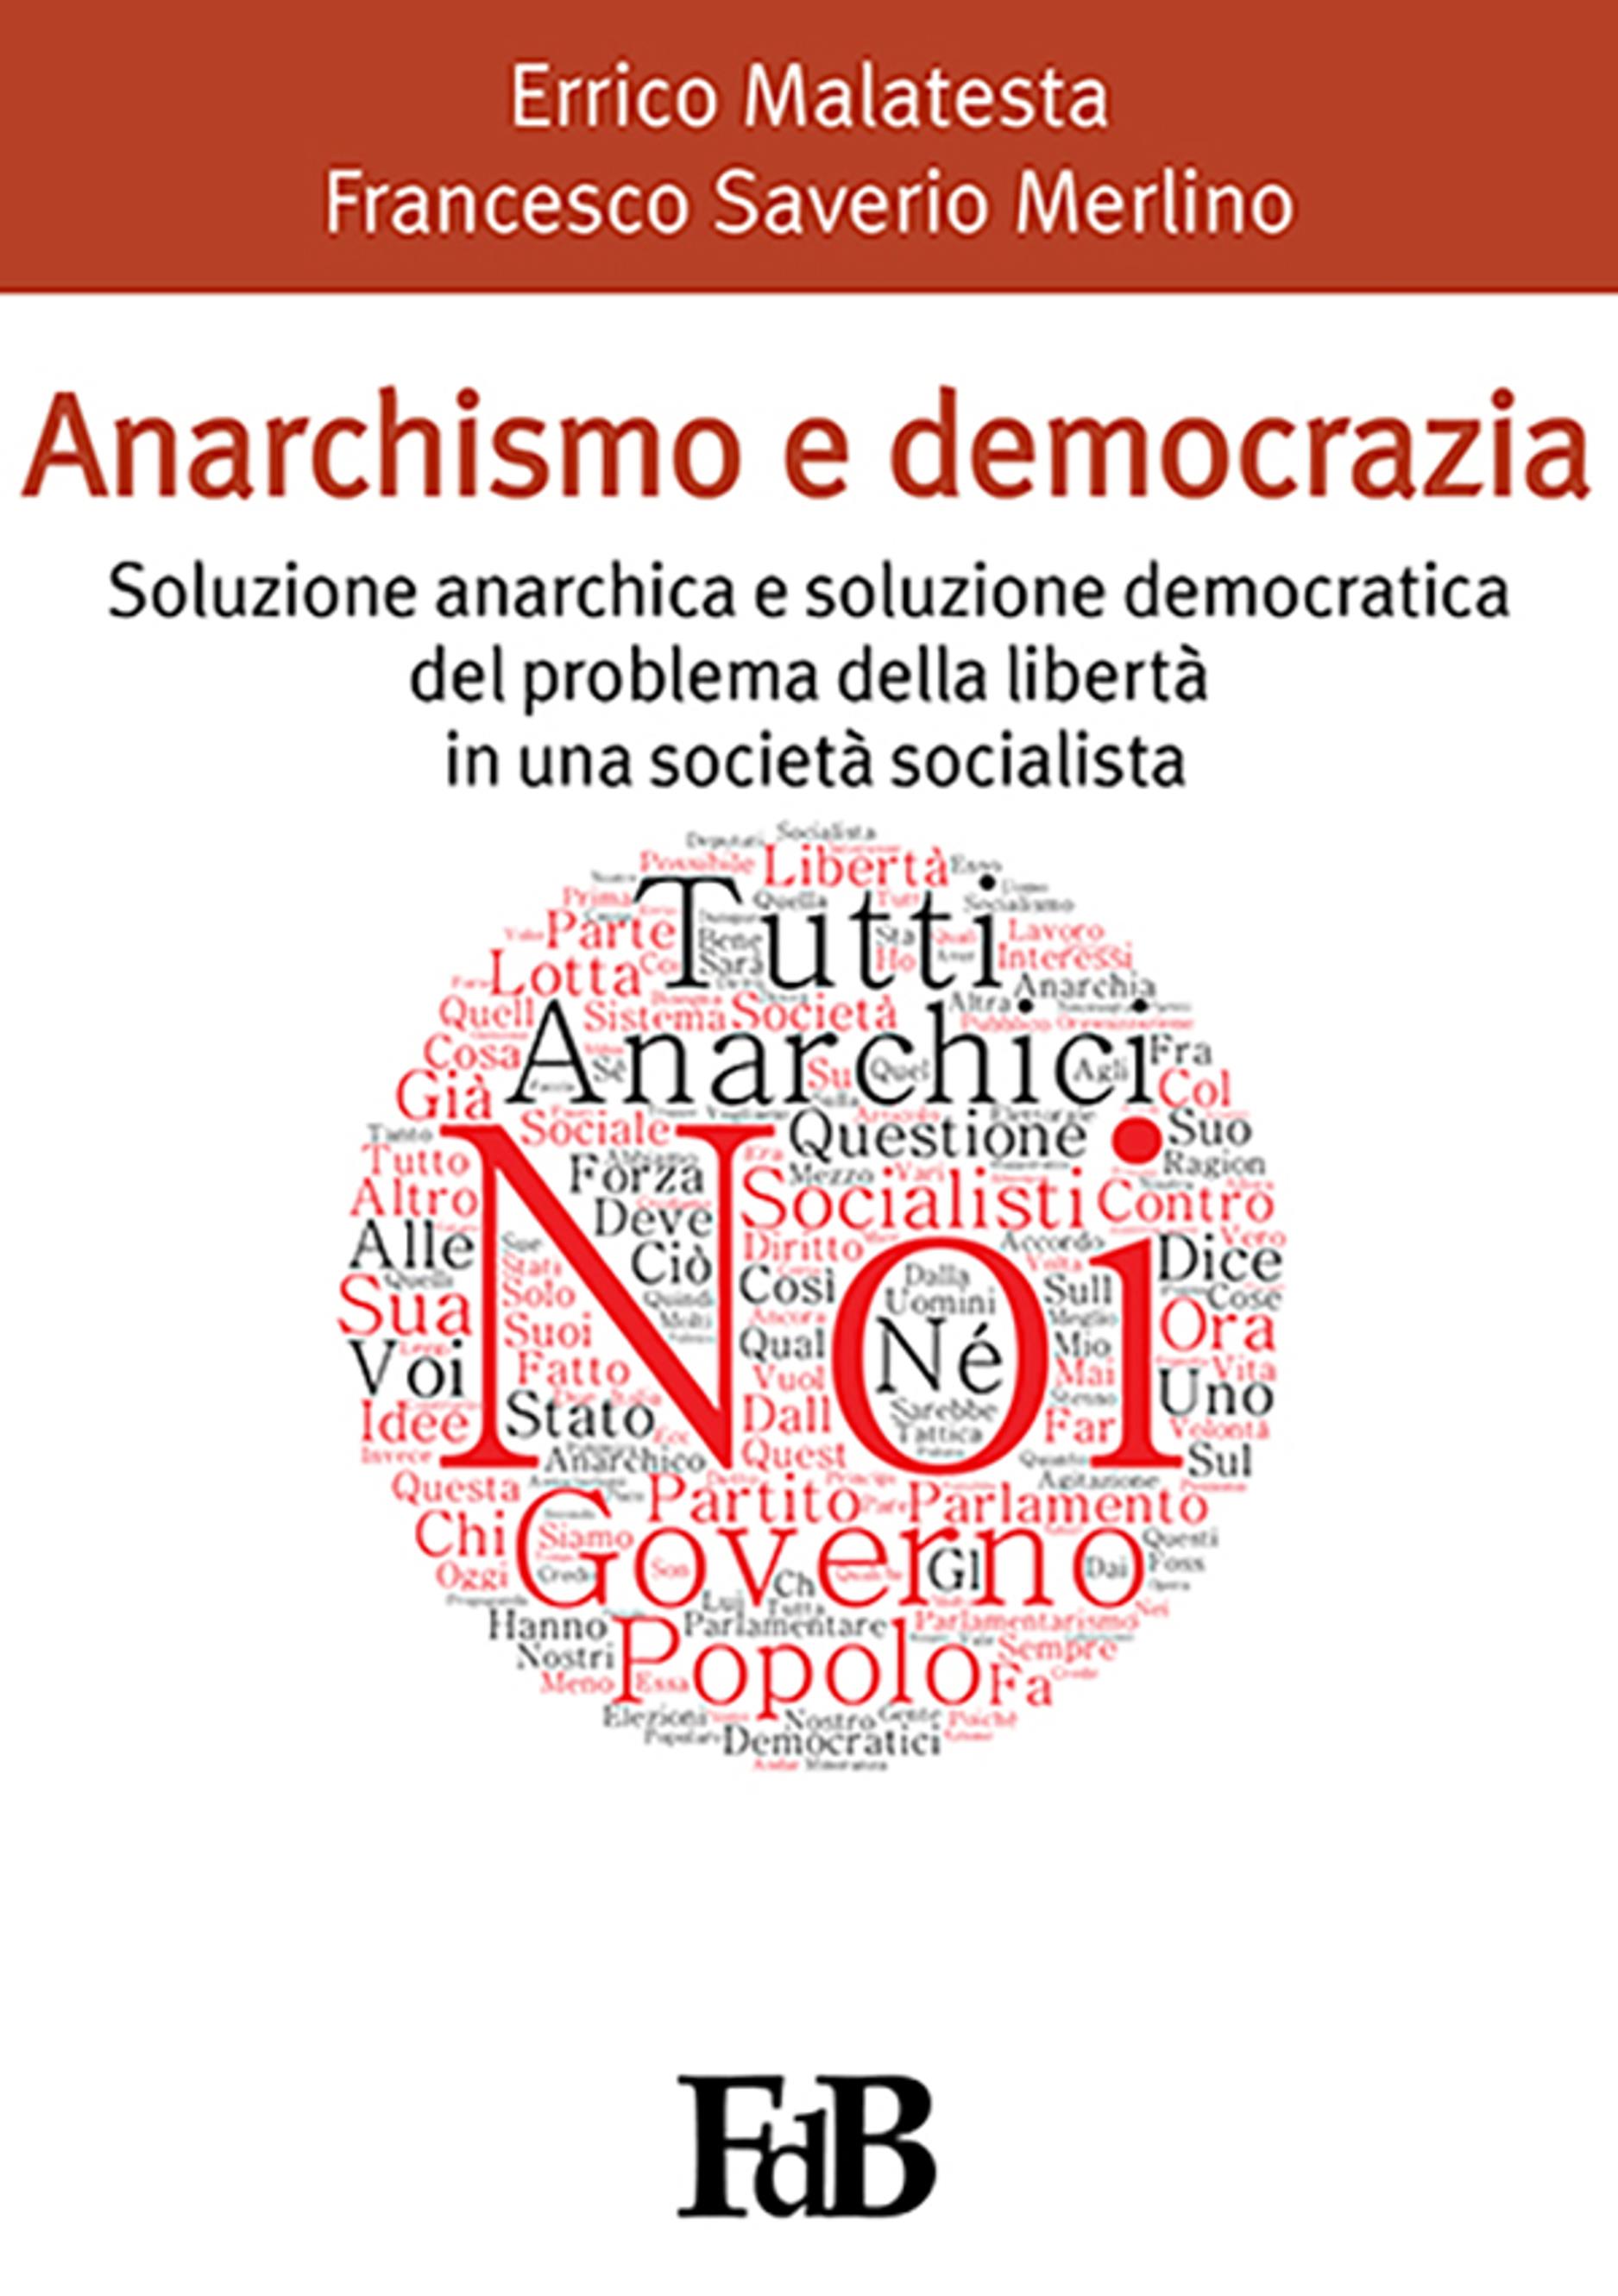 Anarchismo e democrazia